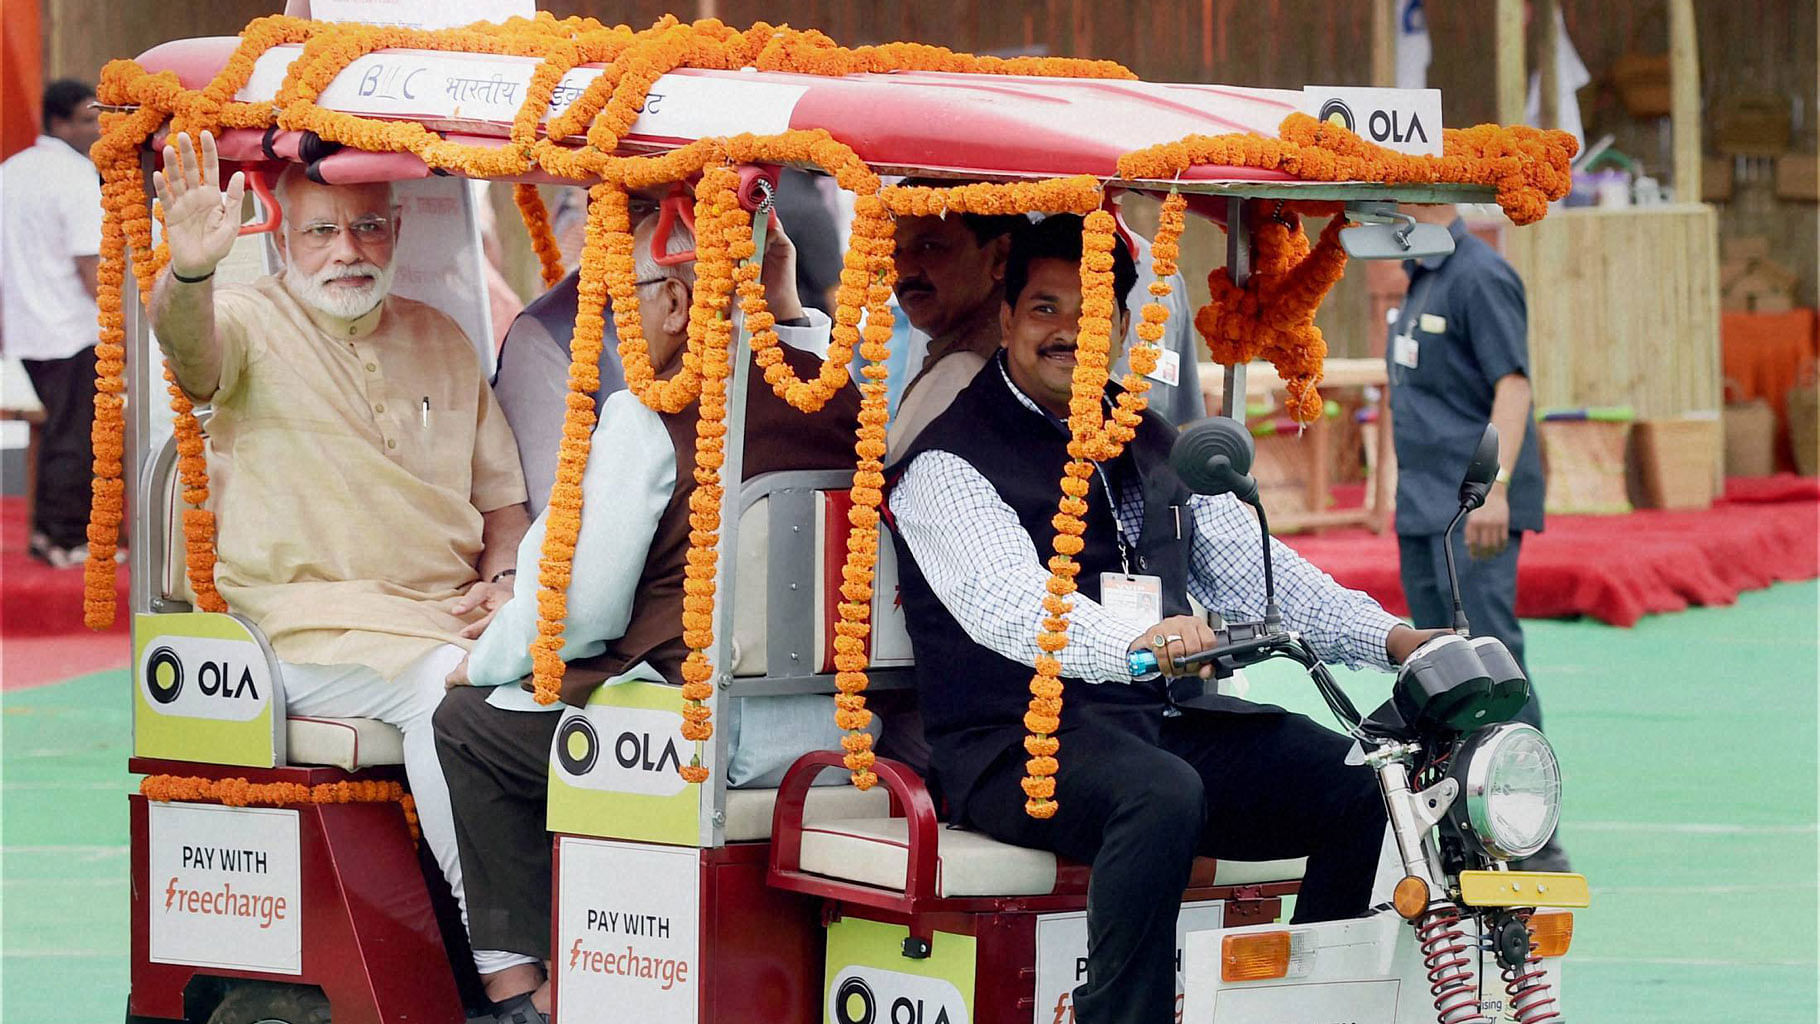  PM Narendra Modi in Ola’s e-rickshaw. (Photo: PTI)